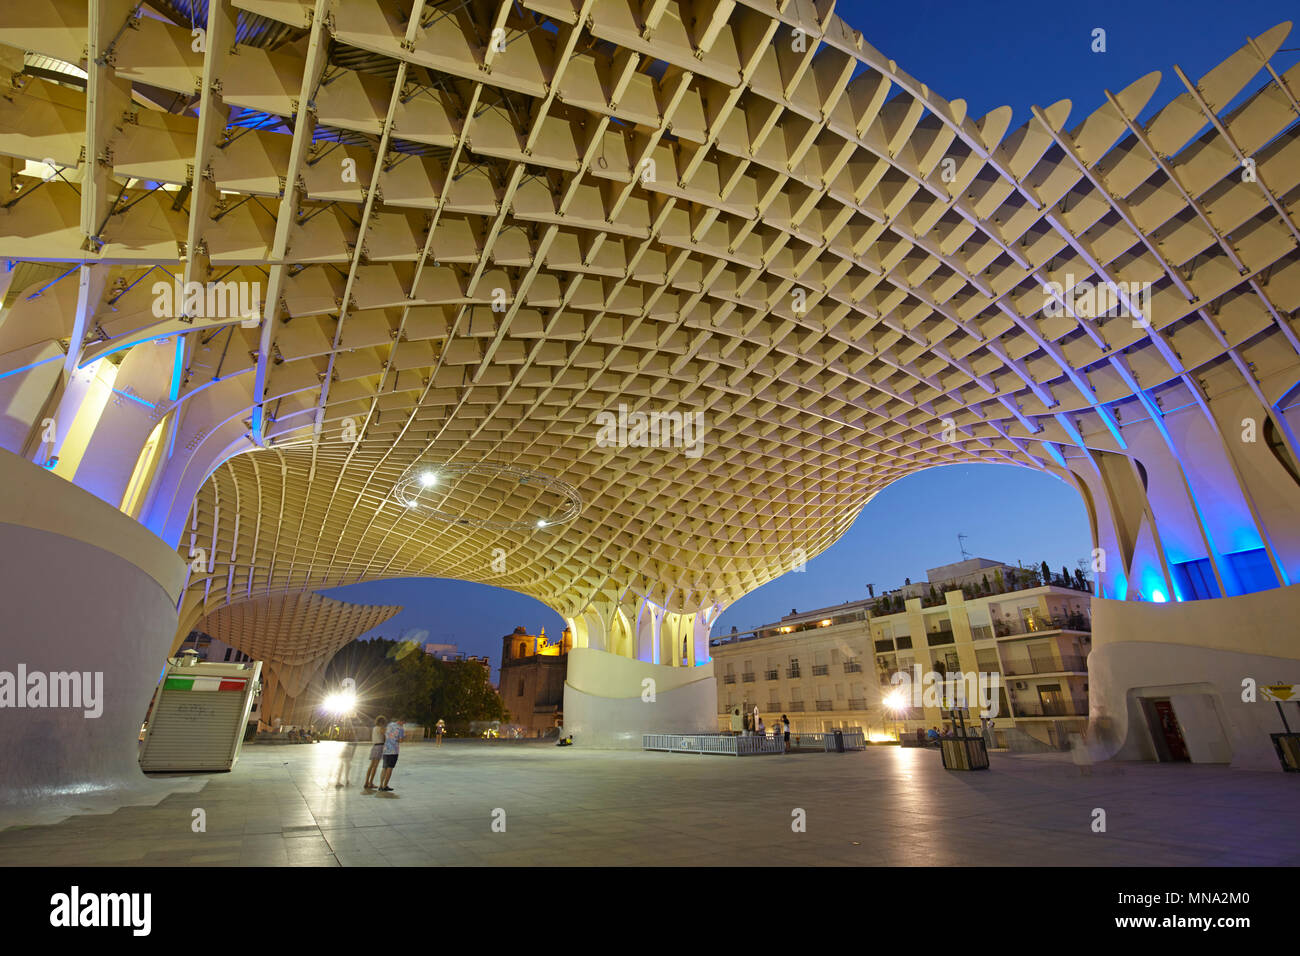 La structure de bois du Metropol Parasol à Séville, Espagne Banque D'Images